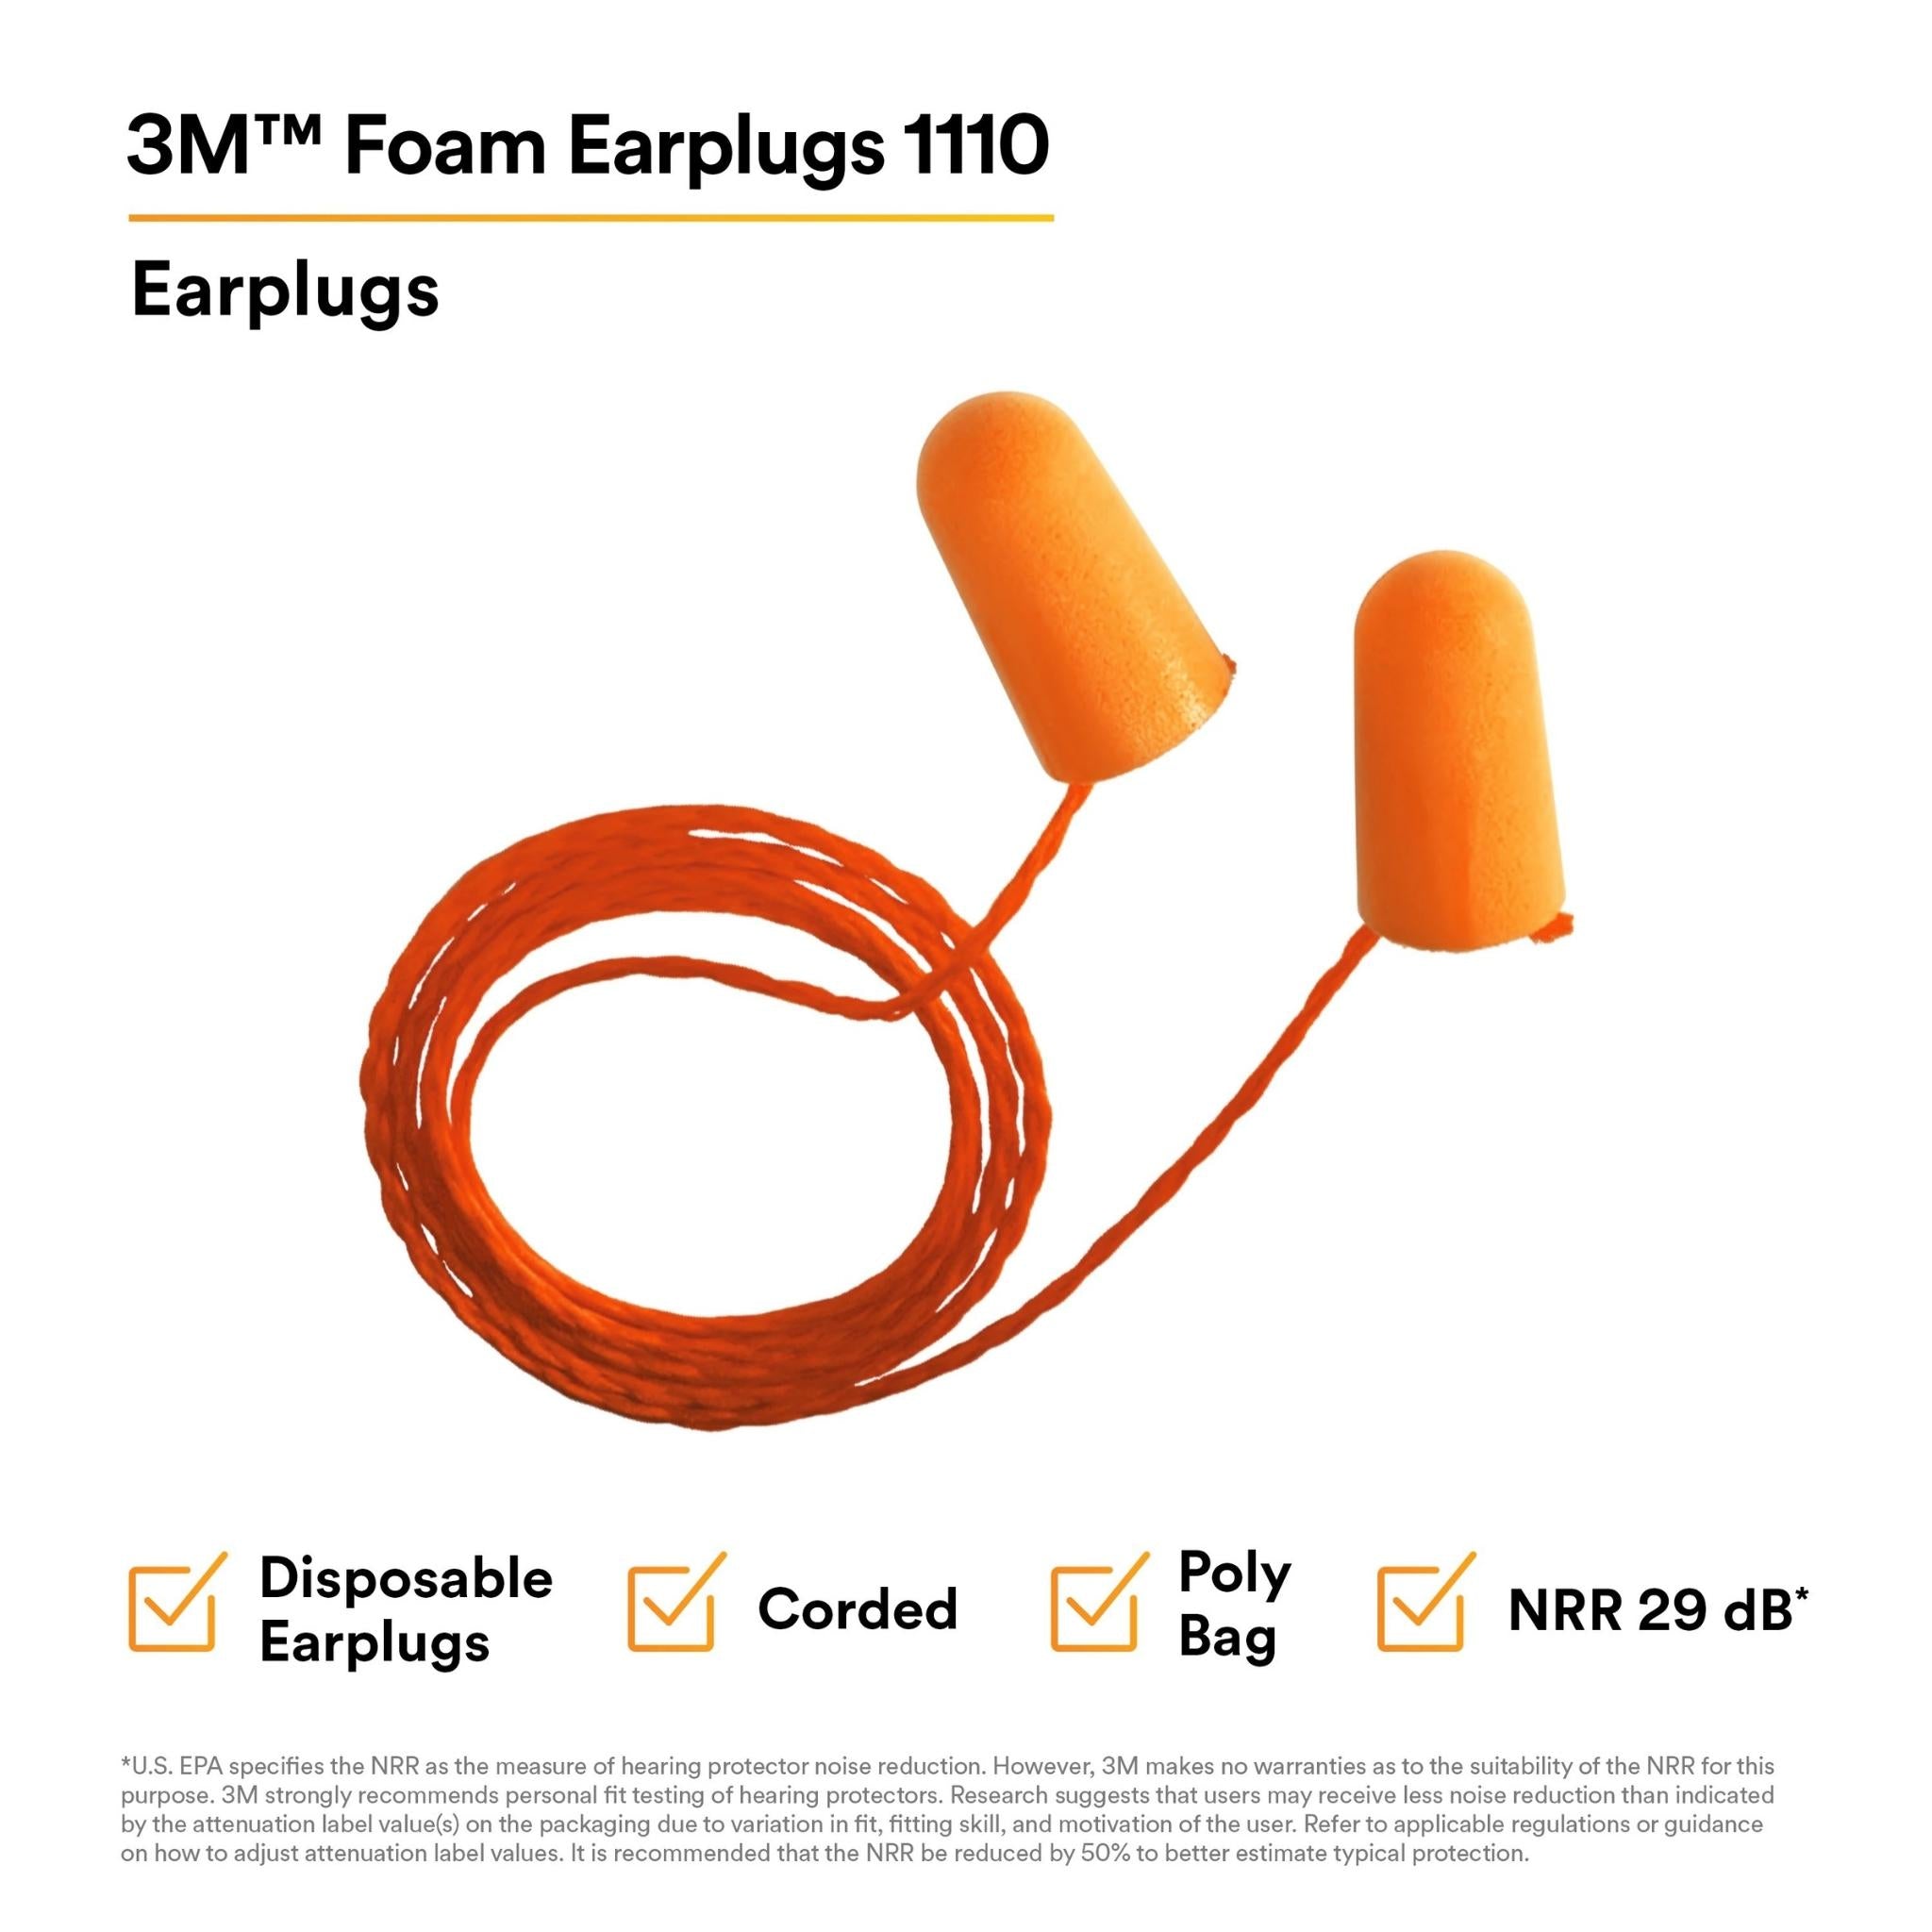 3M™ Foam Earplugs 1110, Corded